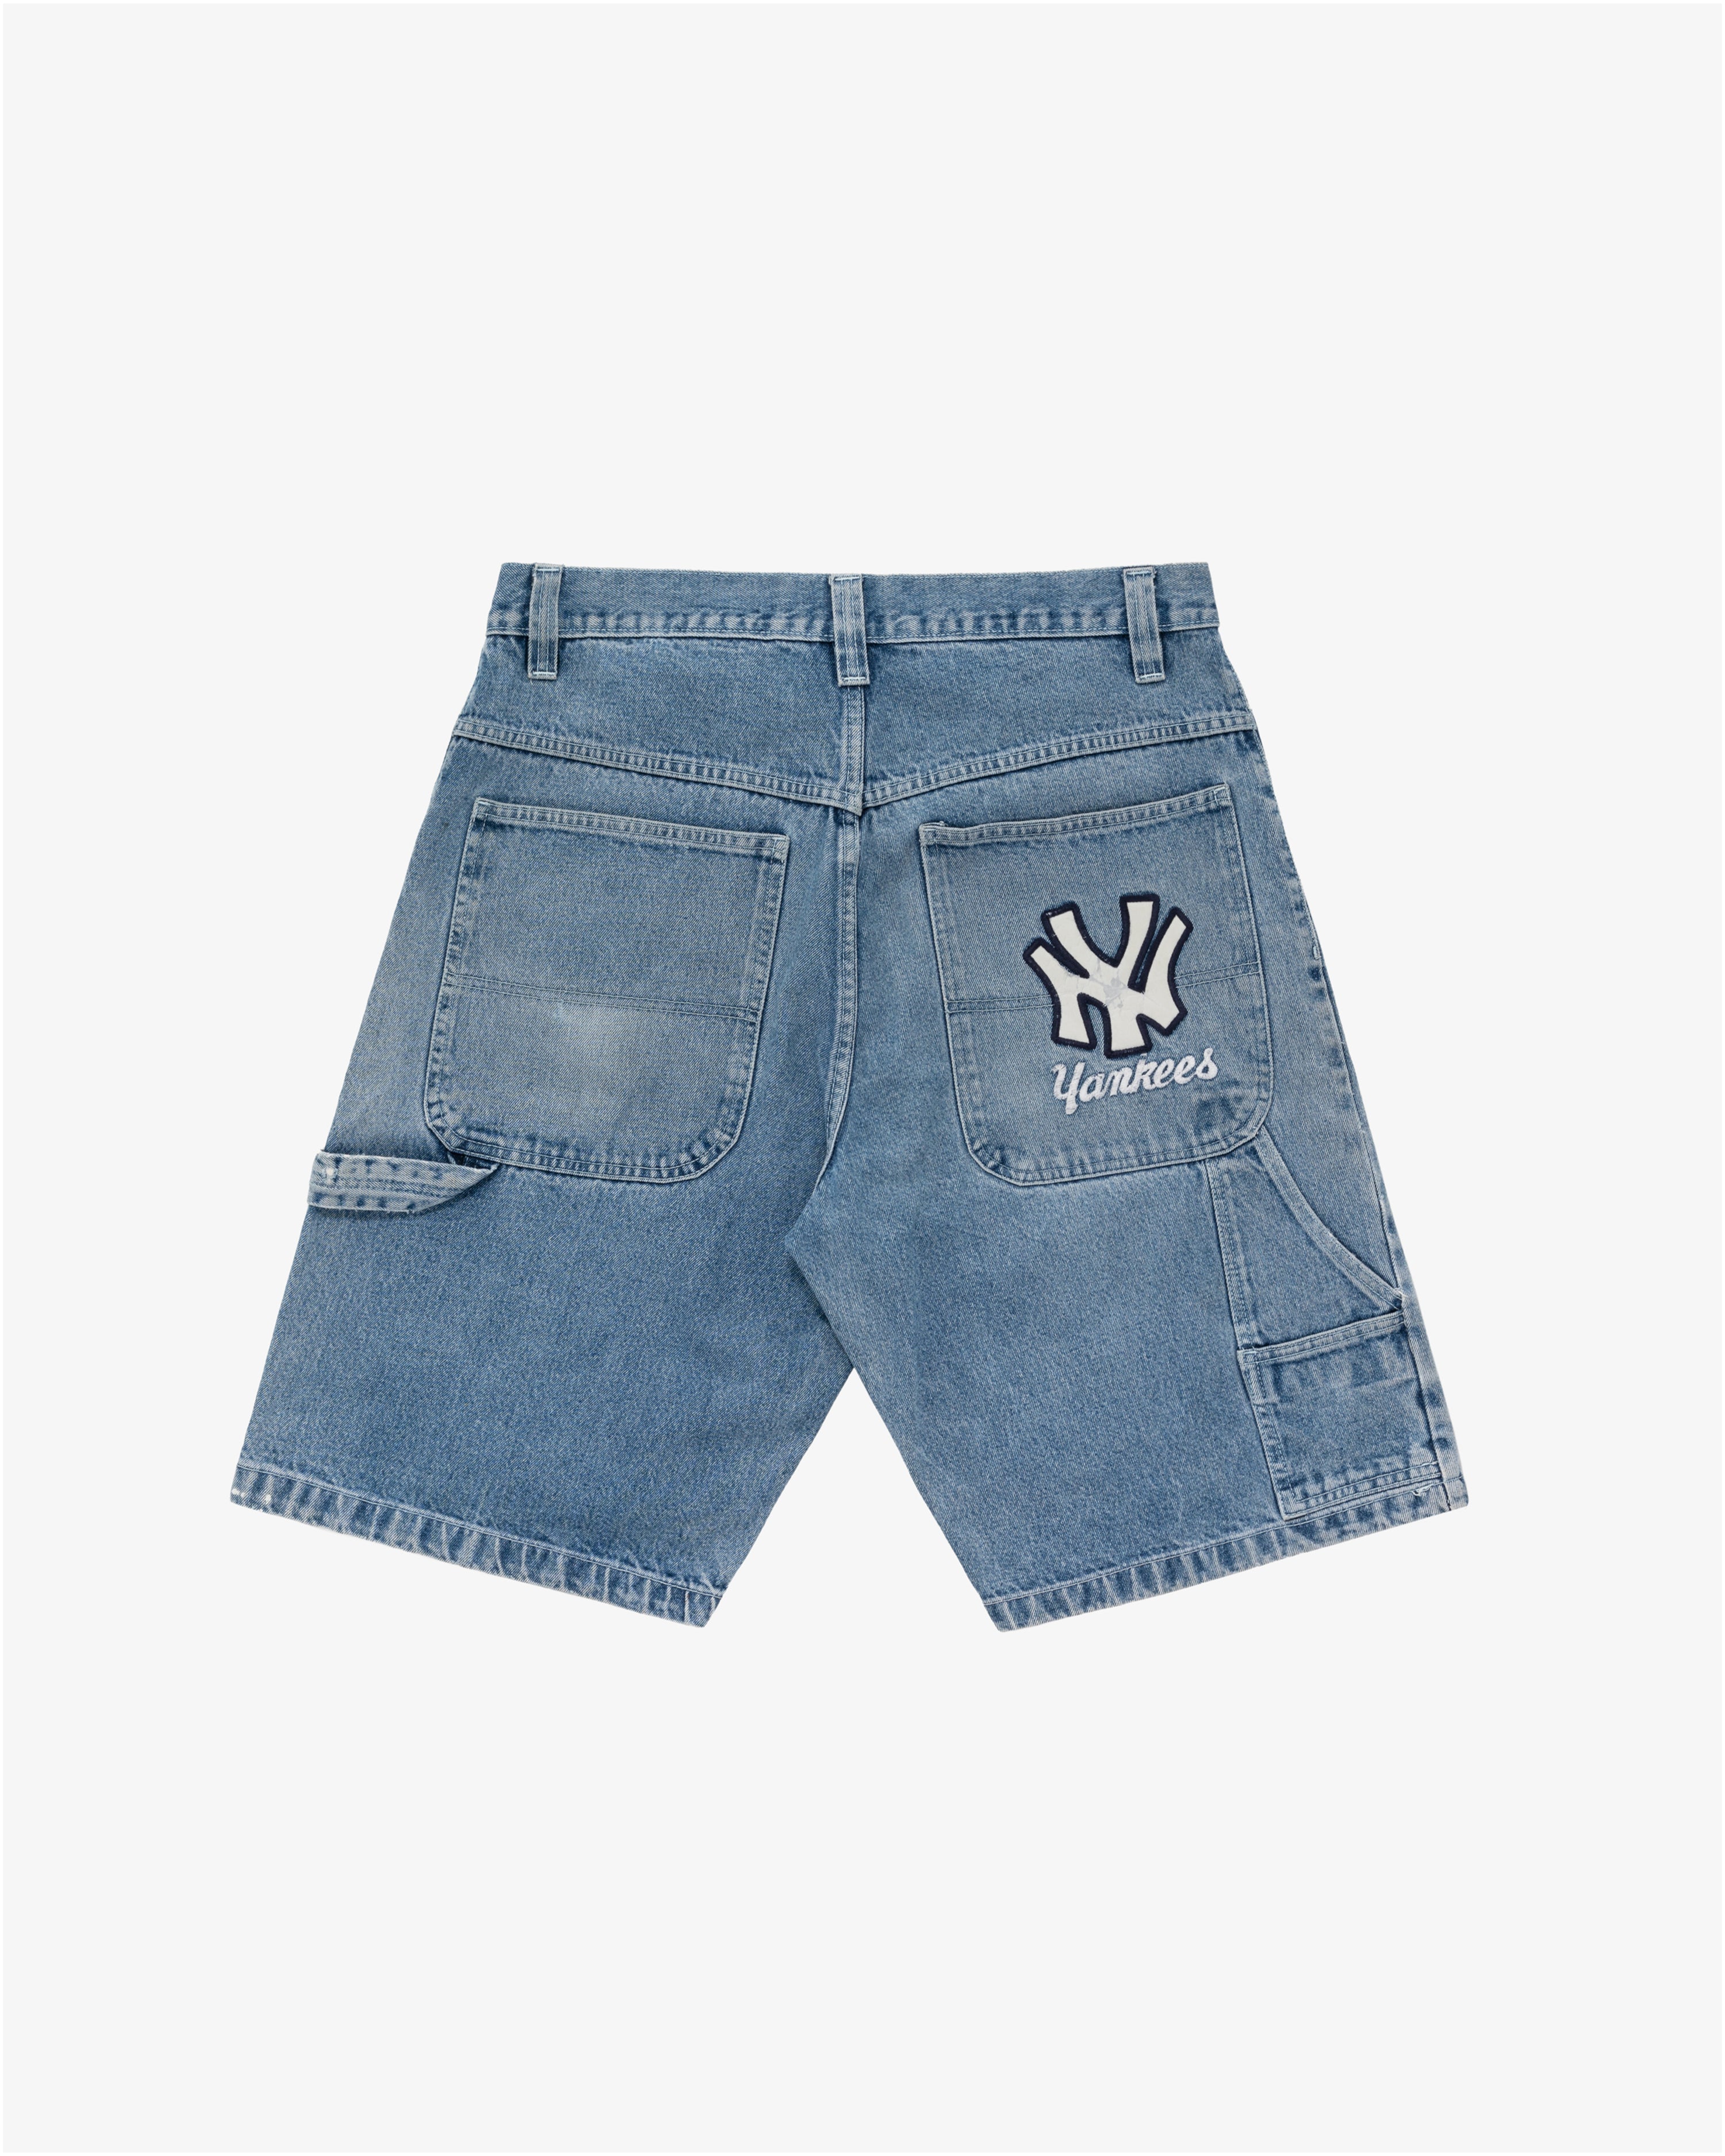 Vintage New York Yankees Denim Carpenter Shorts